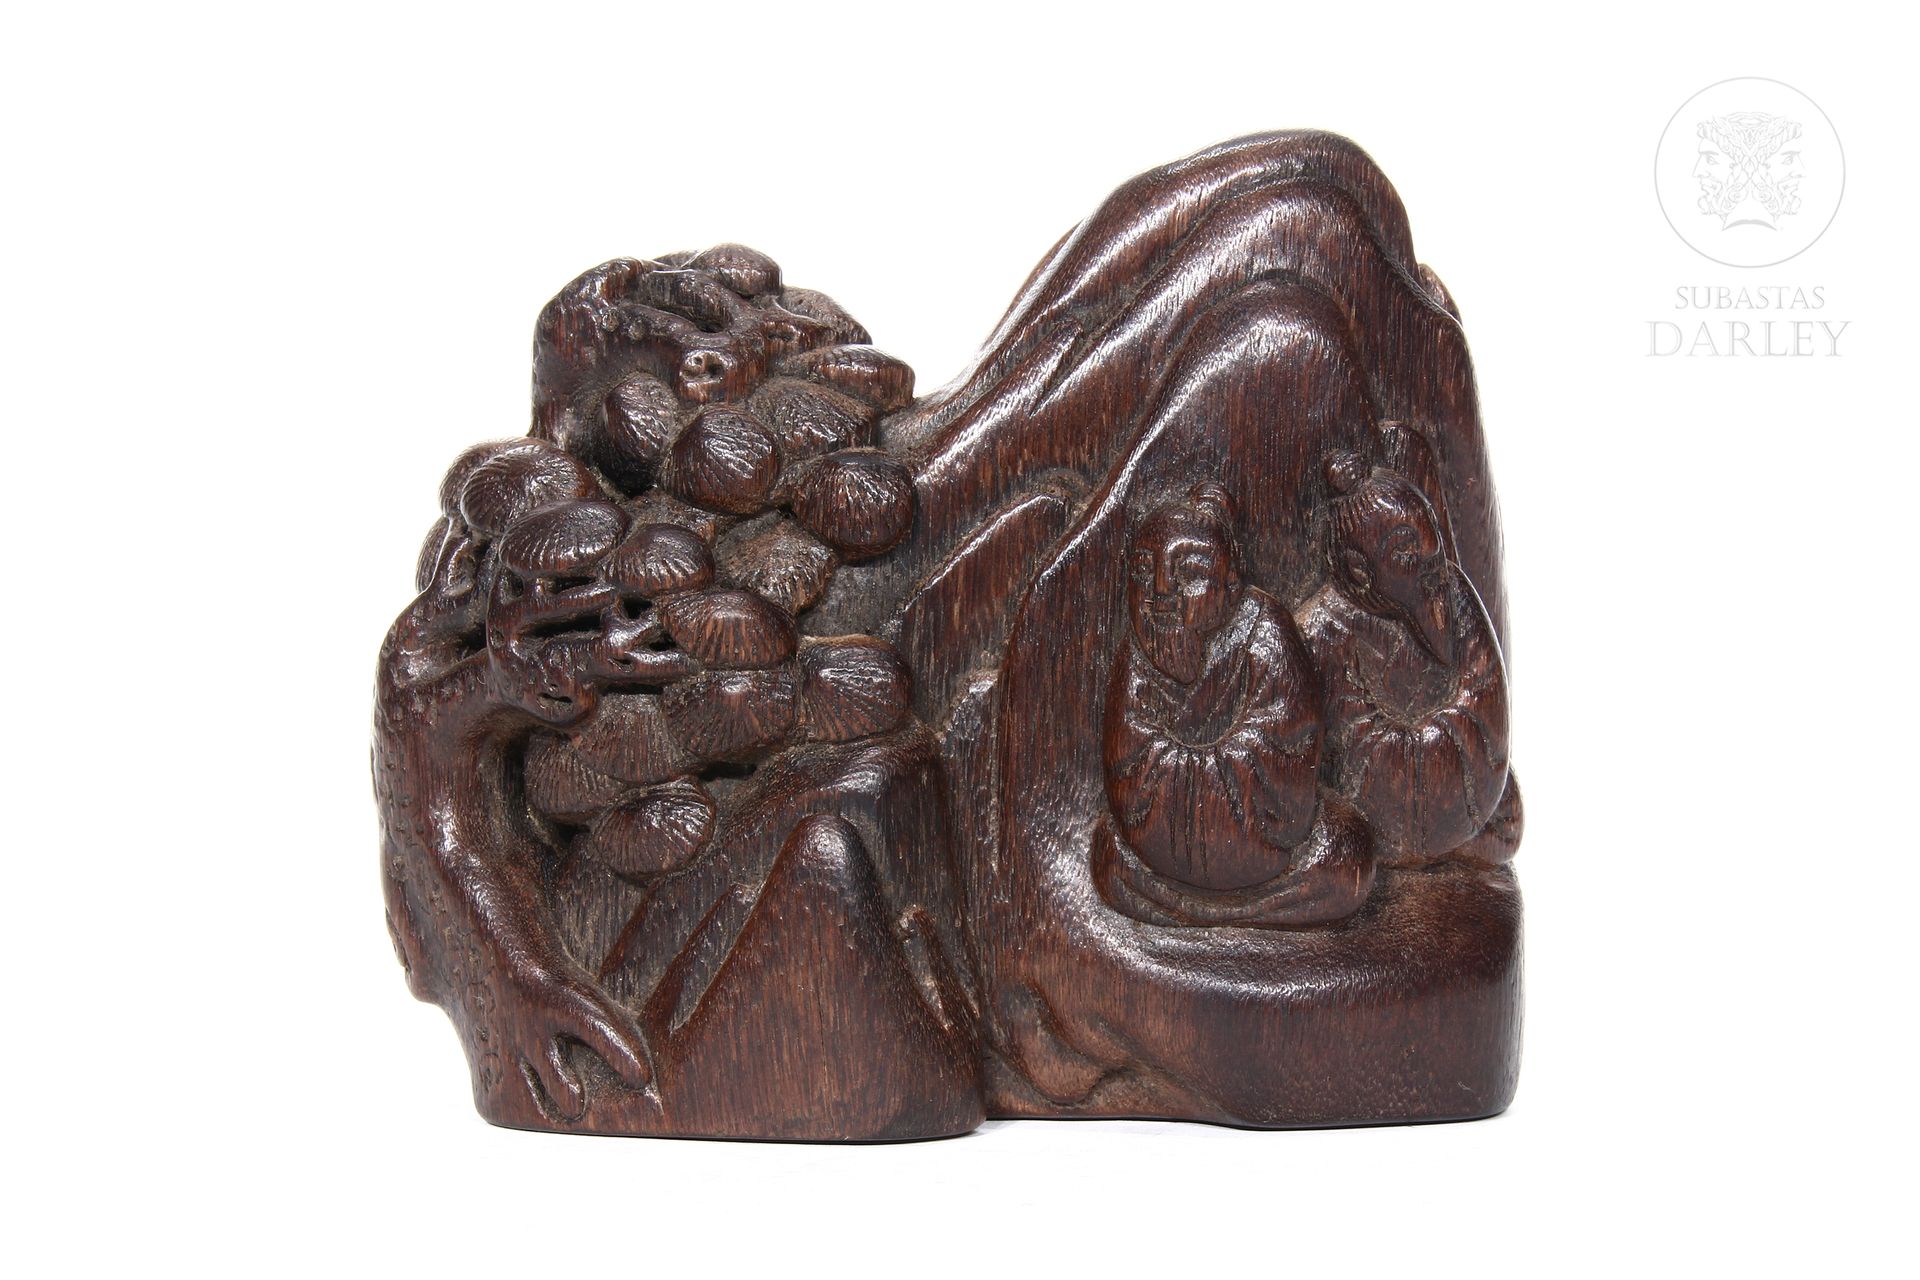 Escultura de madera china tallada, s.XIX 
Representa una montaña con sabios.



&hellip;